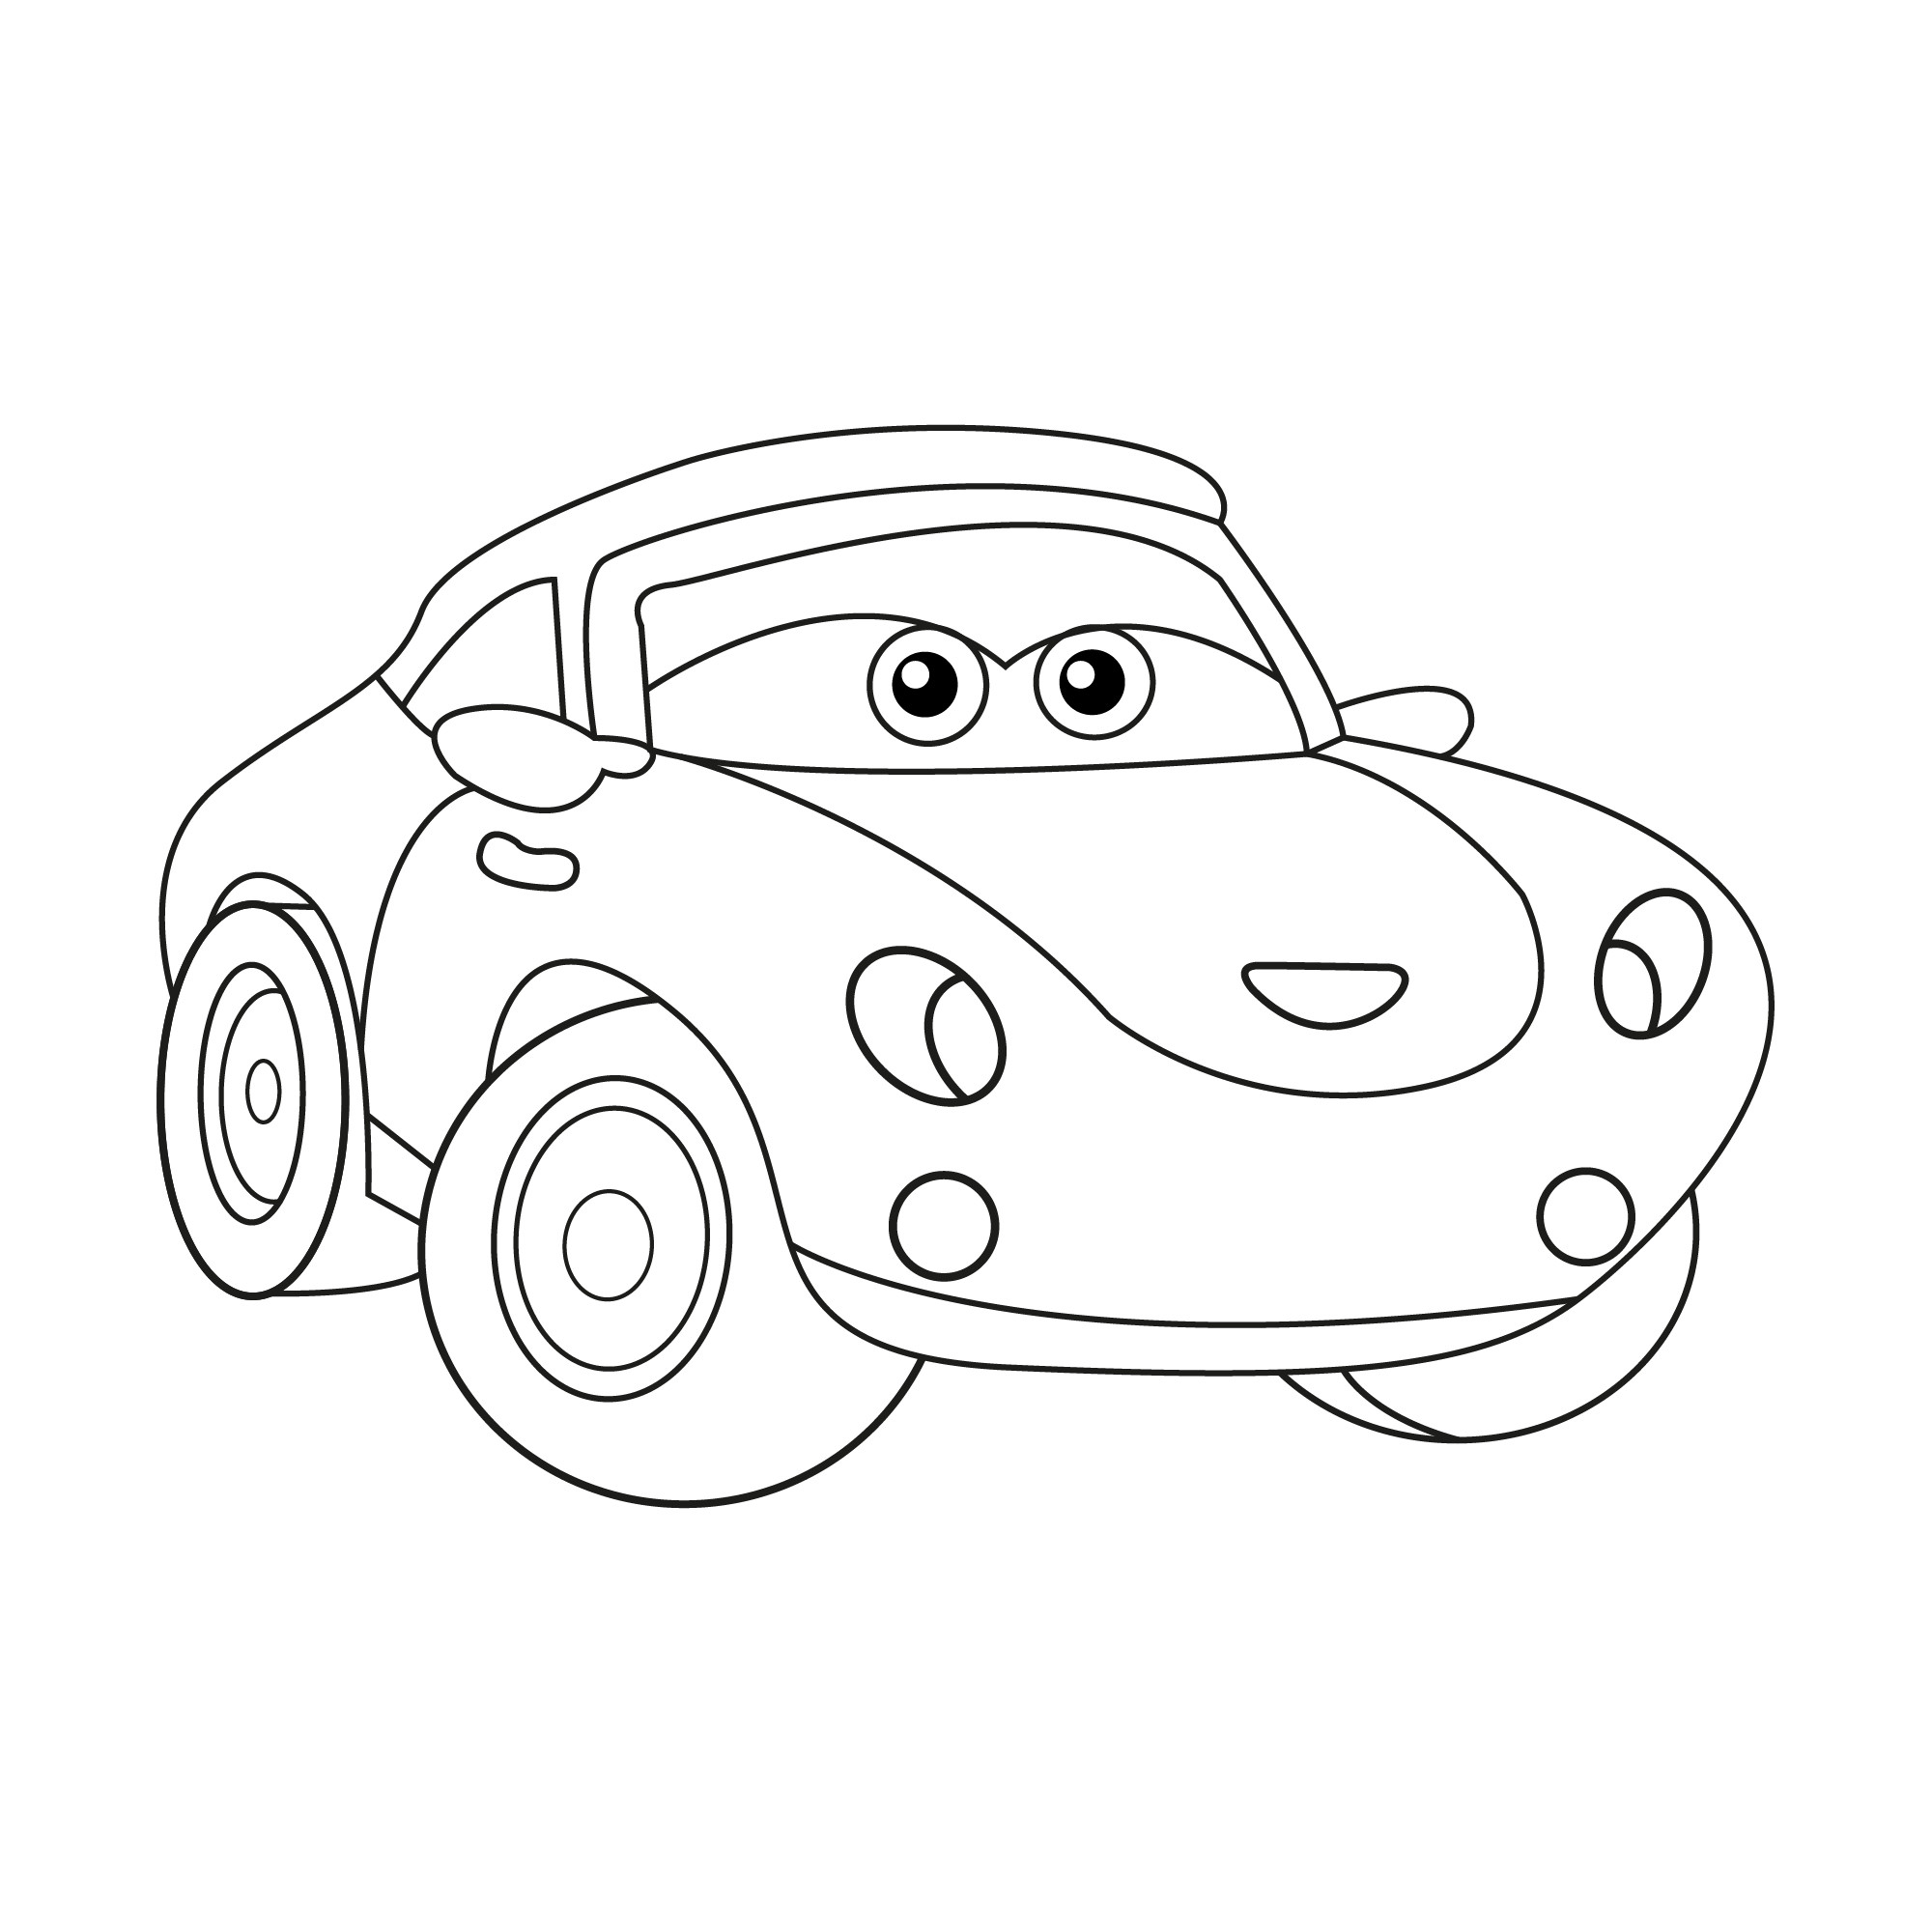 Раскраска для детей: игрушка гоночный автомобиль с глазами